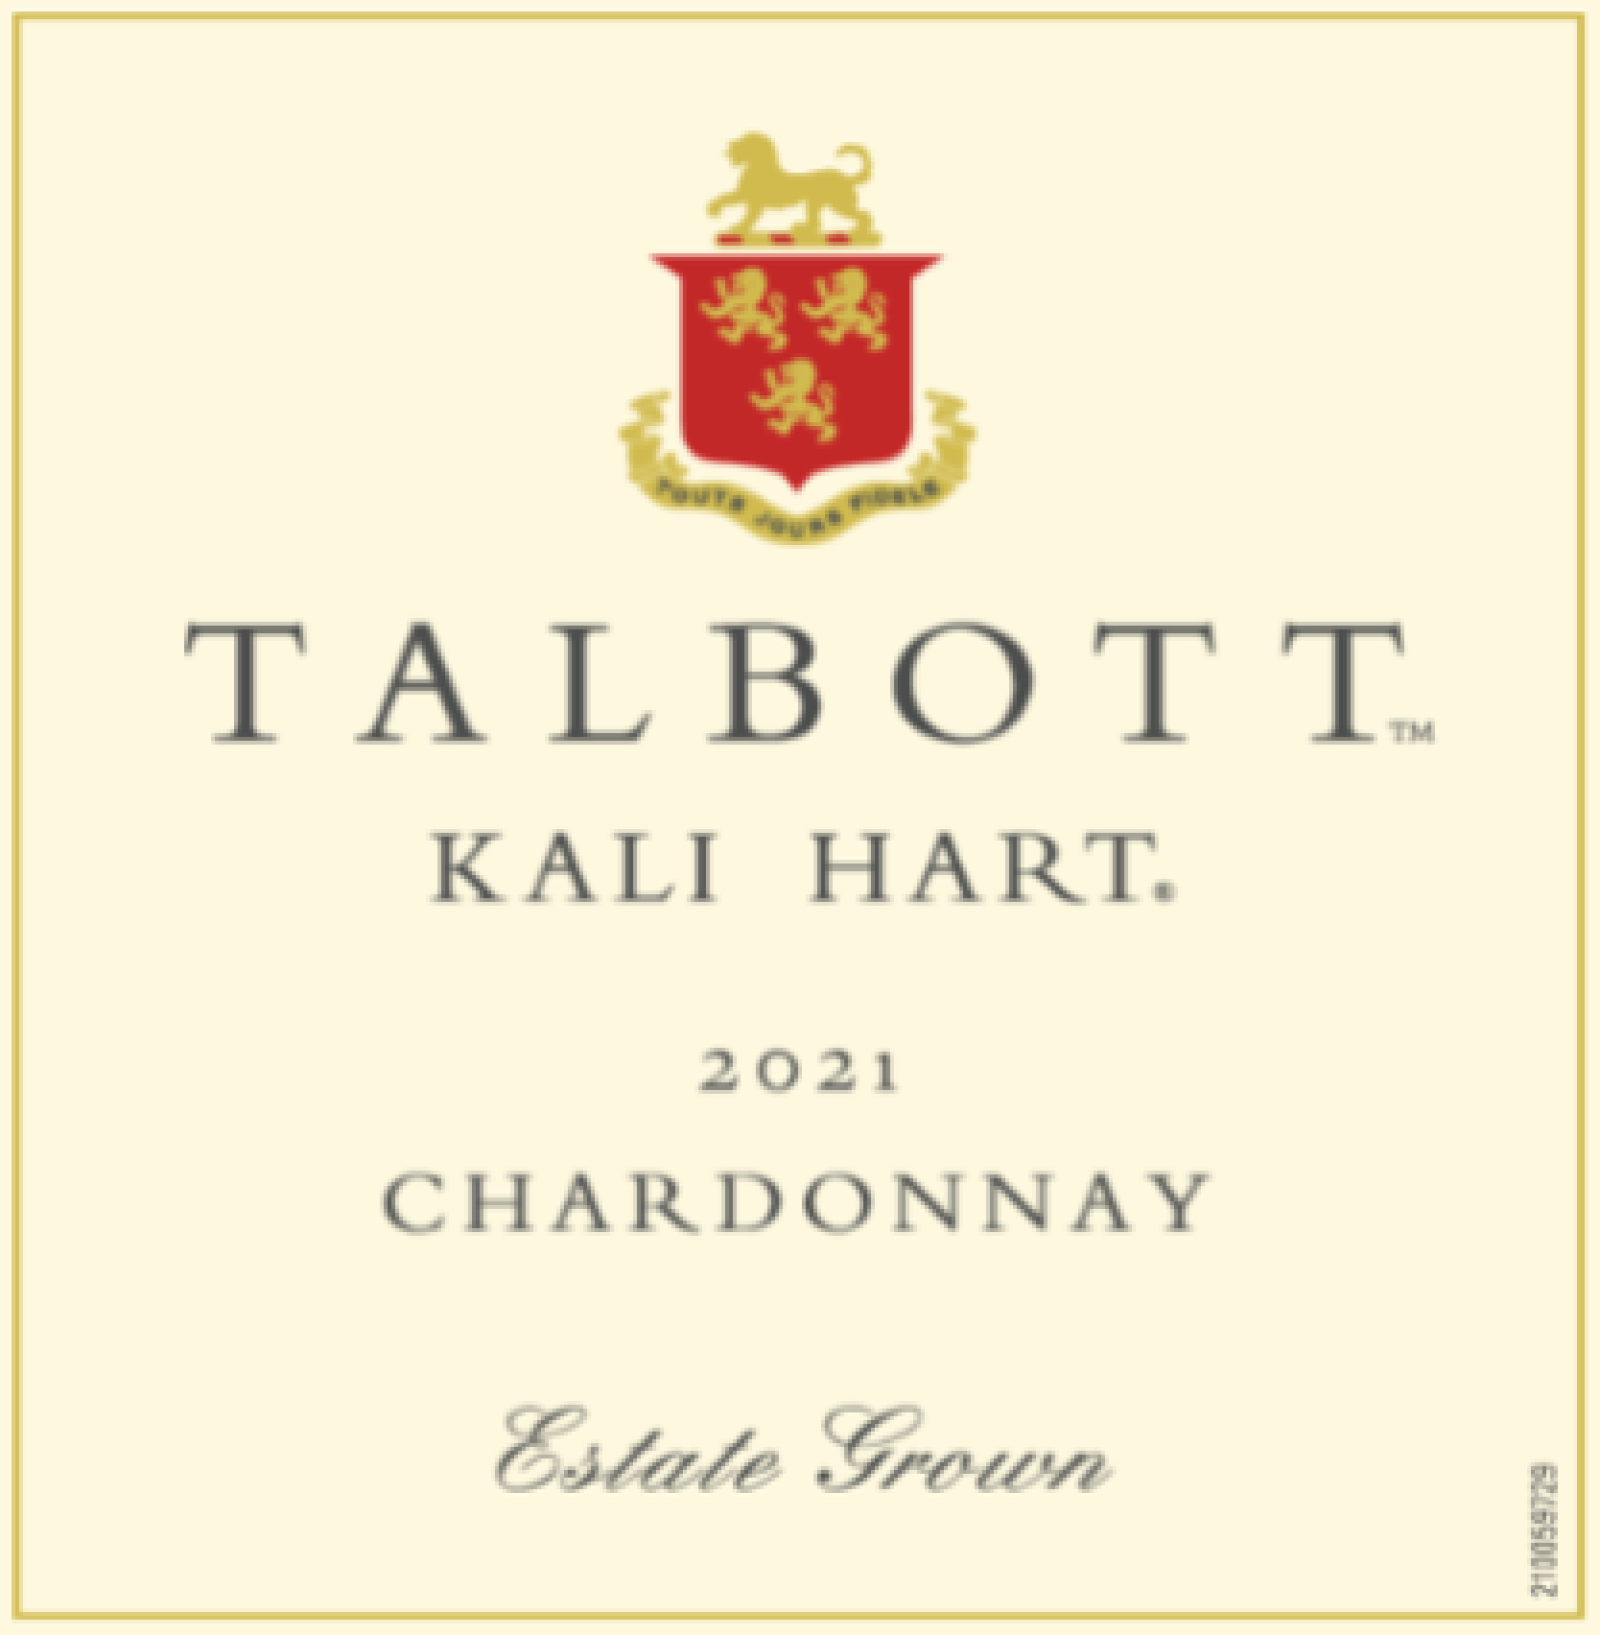 Talbott Vineyards Kali Hart Chardonnay 2021